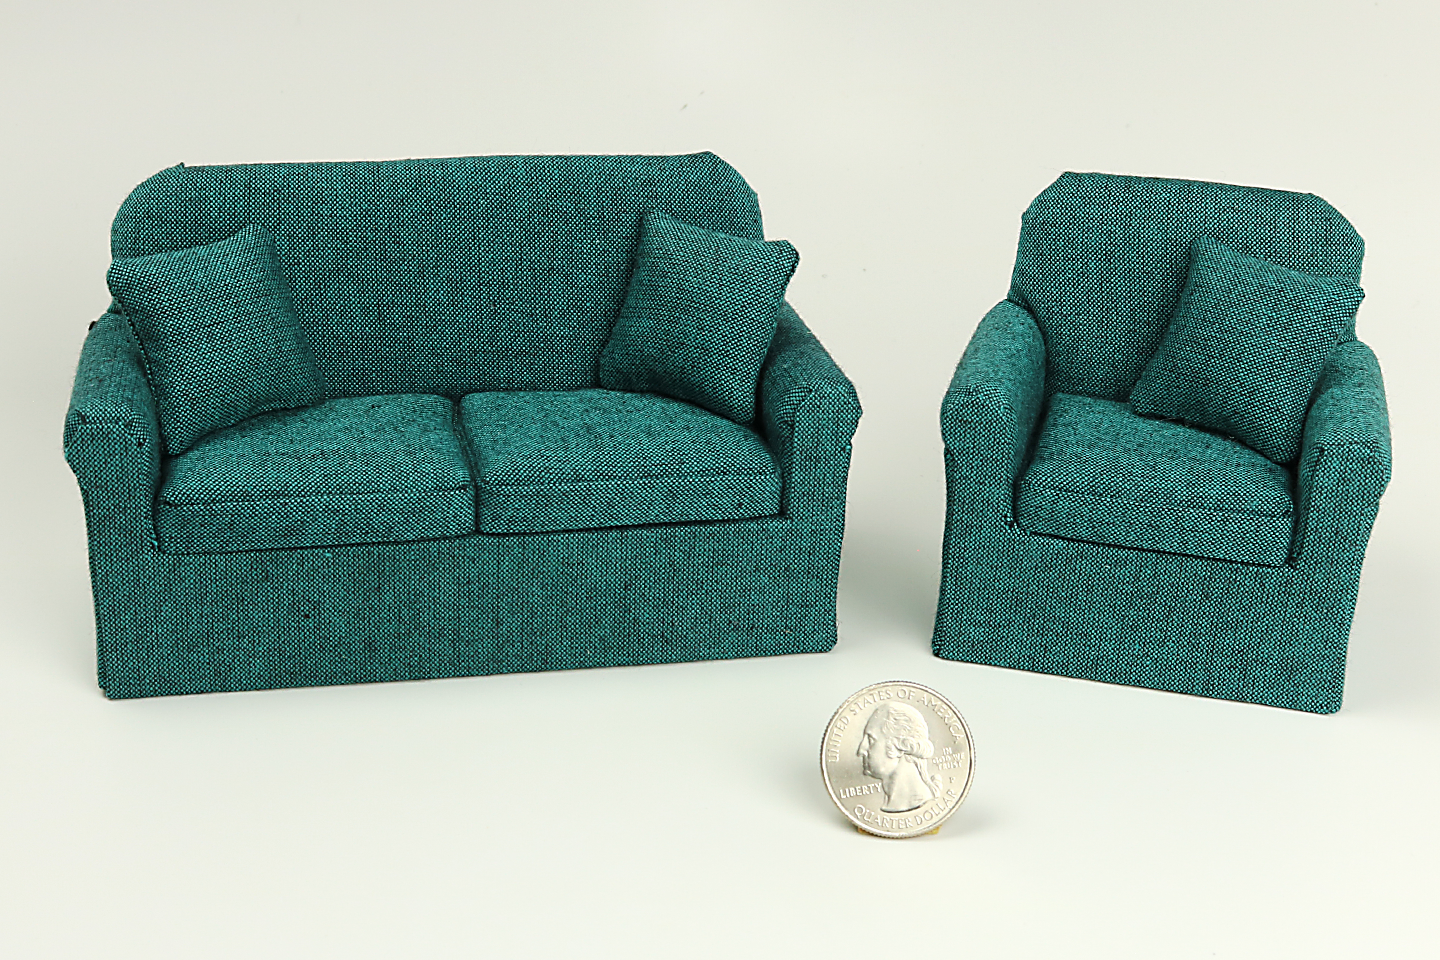 Turquoise Basics Sofa